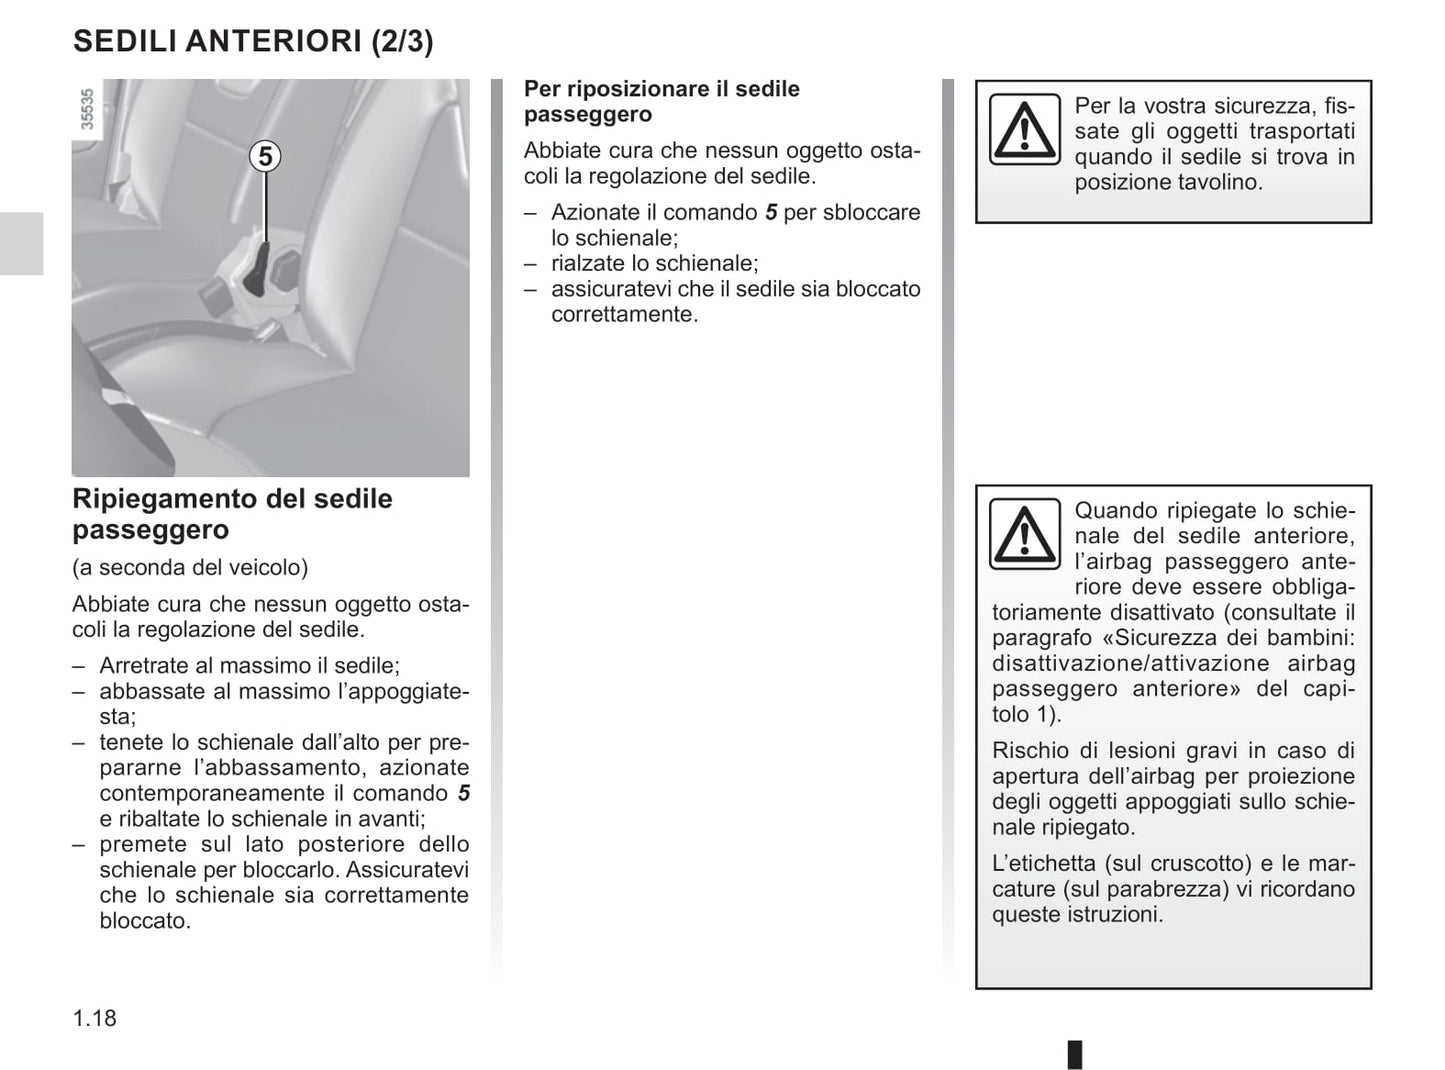 2019-2020 Renault Clio Owner's Manual | Italian